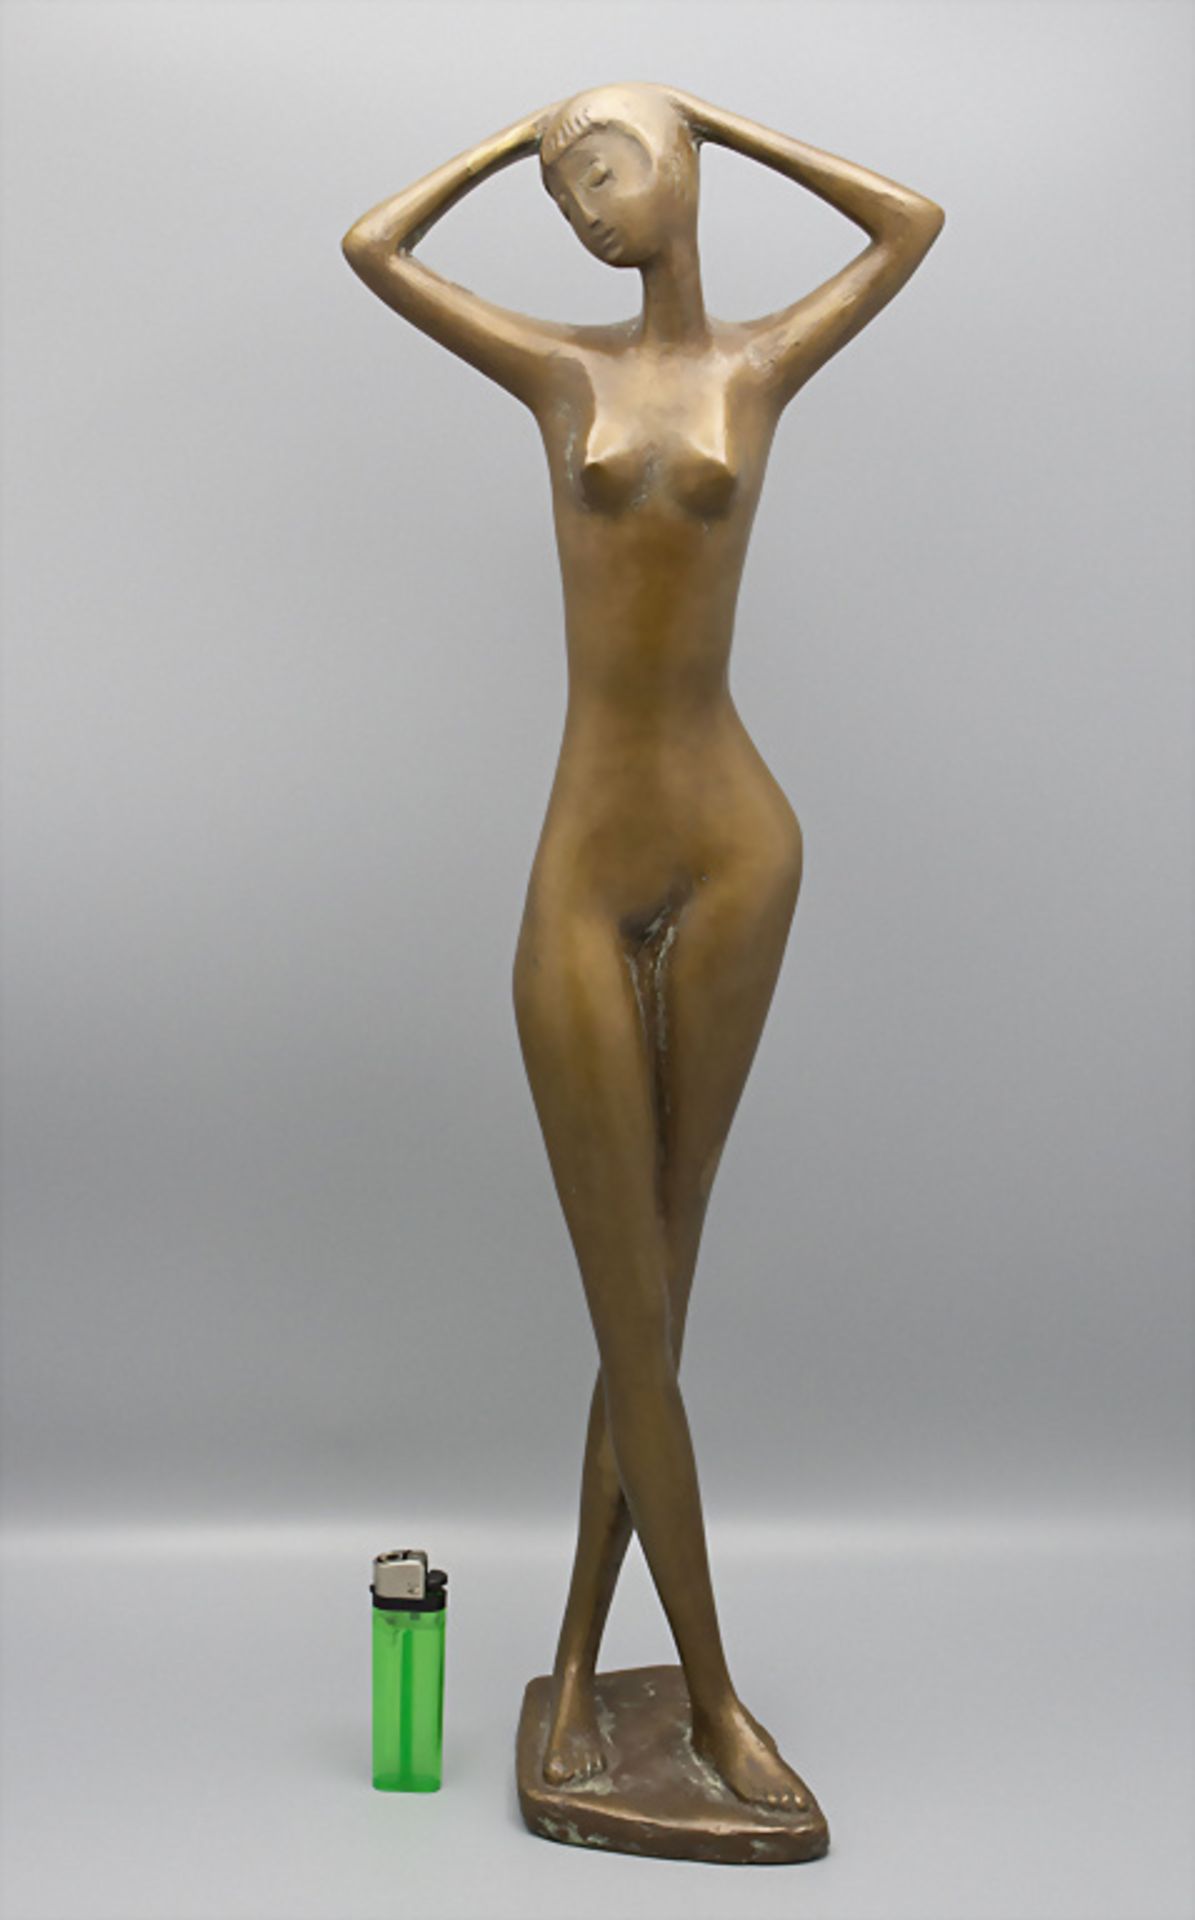 Bronzeplastik 'Weiblicher Akt' / A bronze figure of a 'female nude'